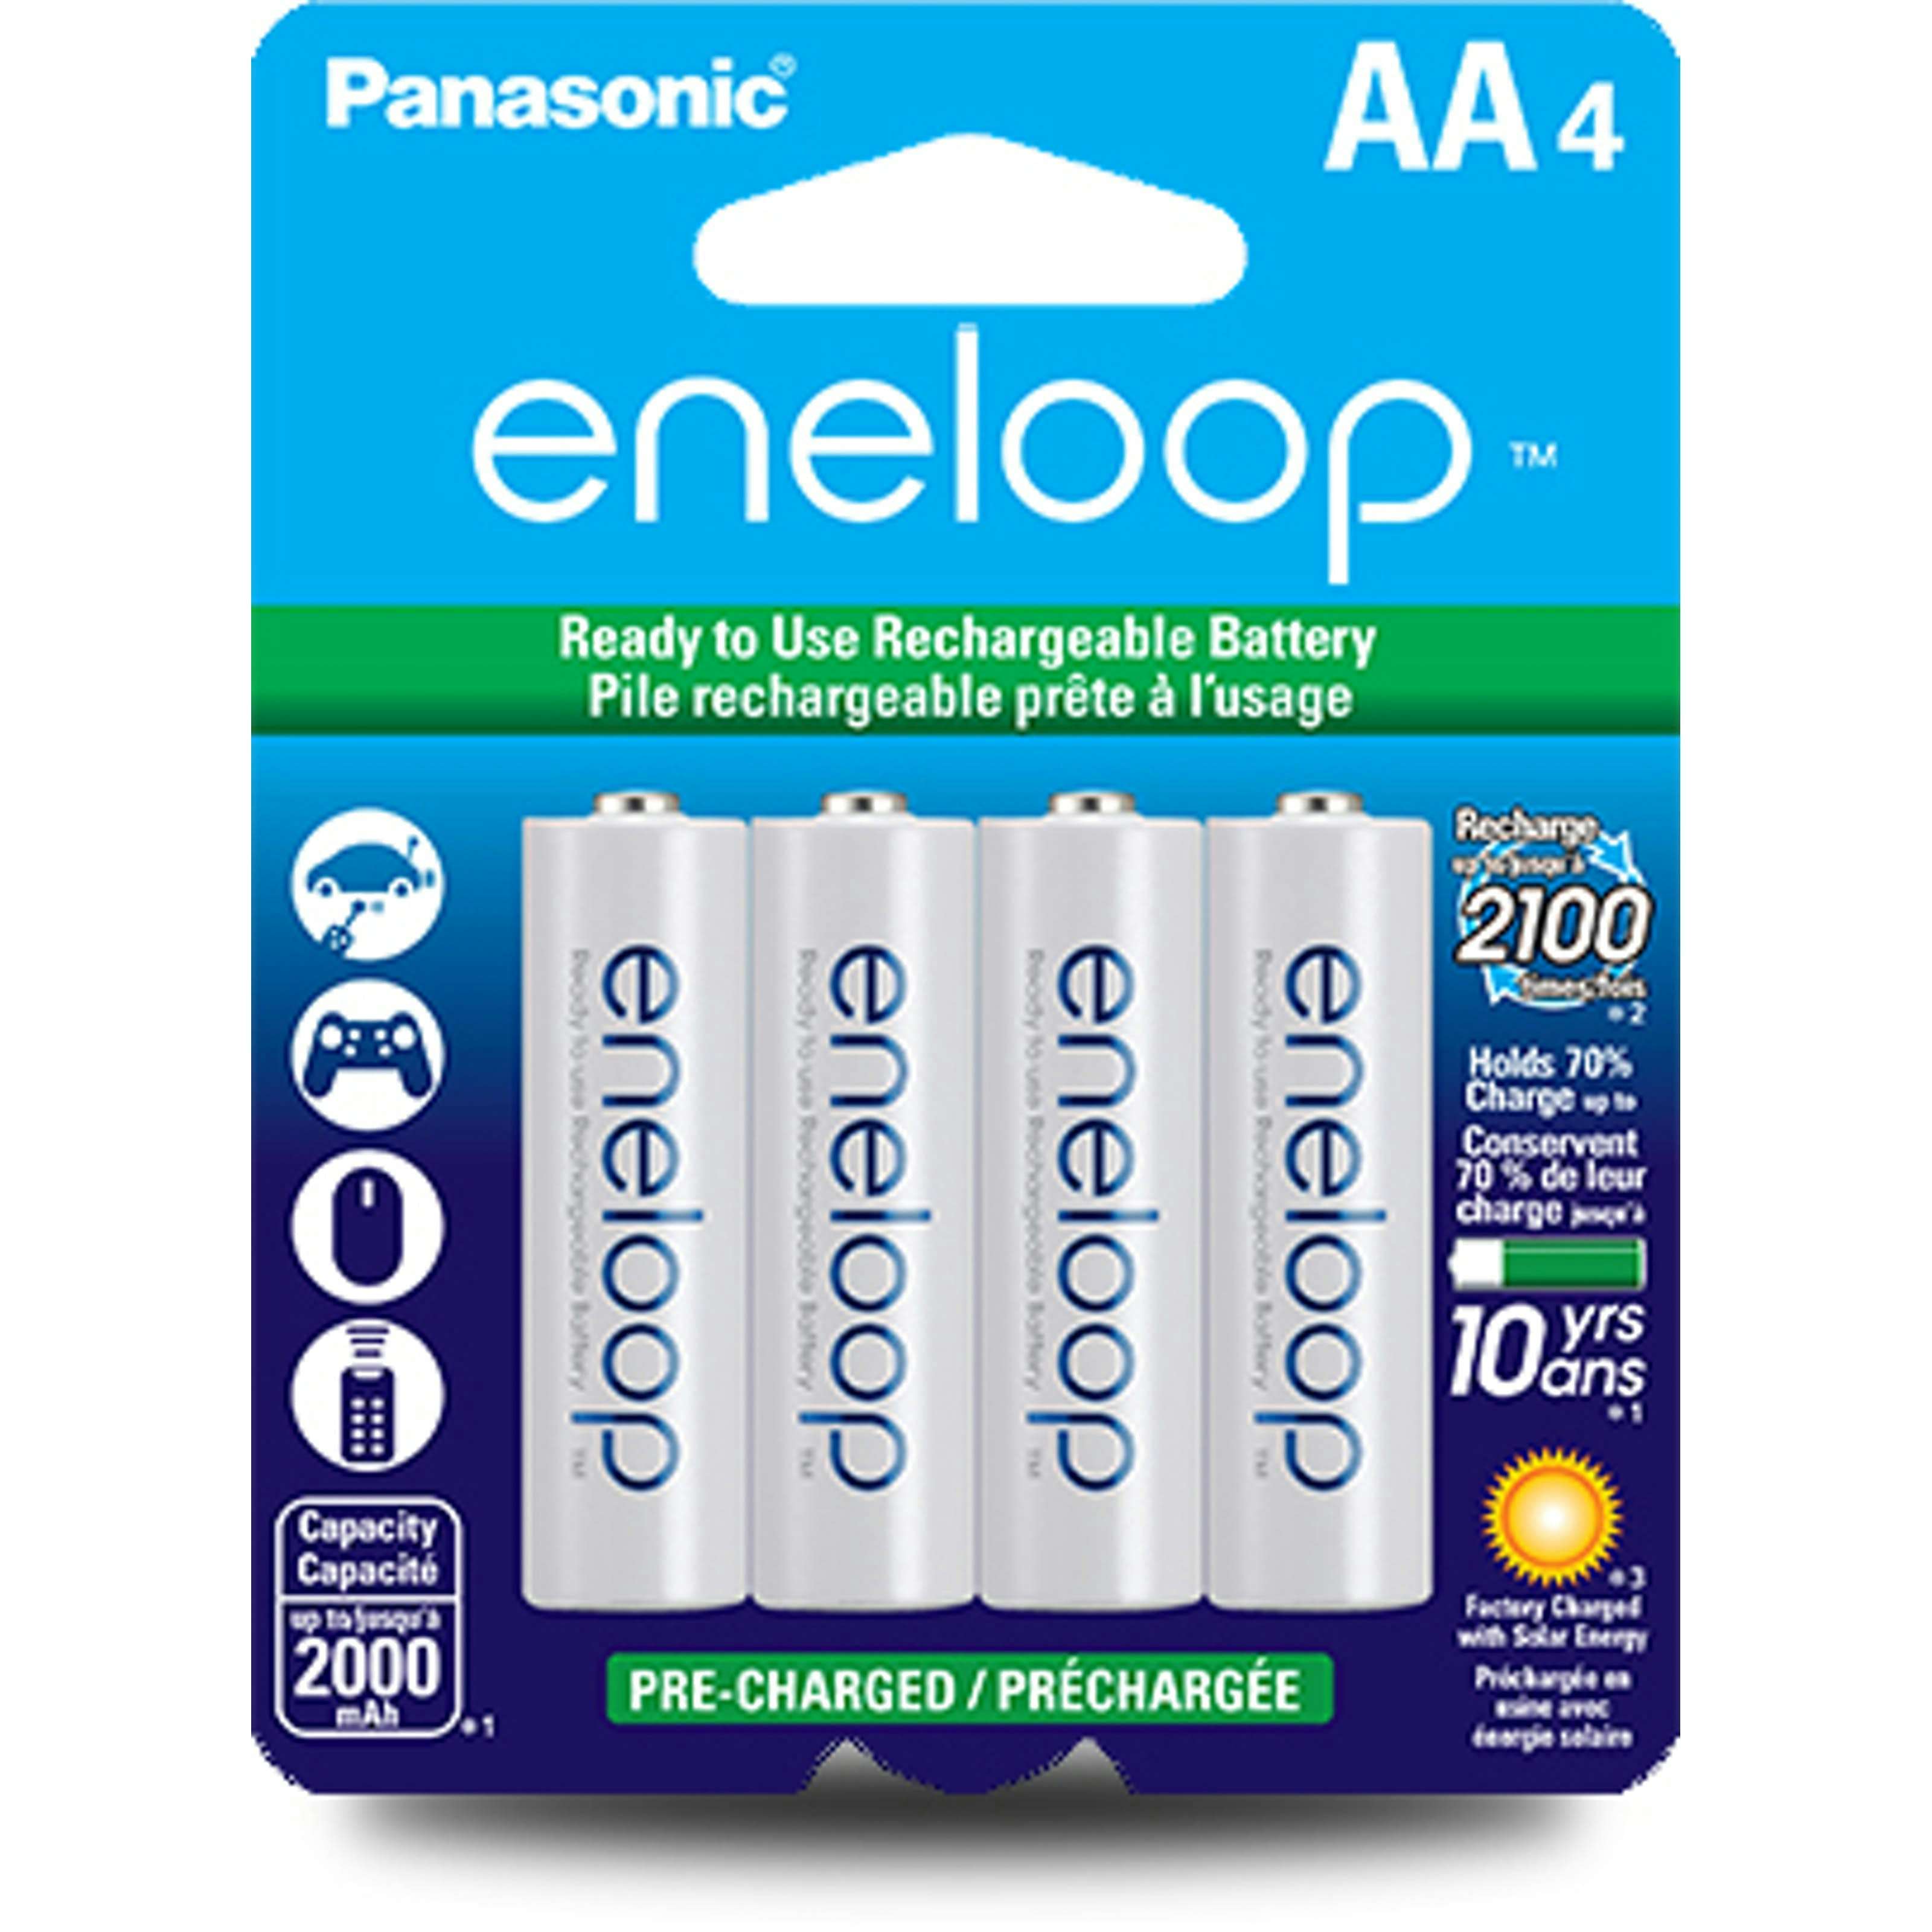 Panasonic eneloop batteries